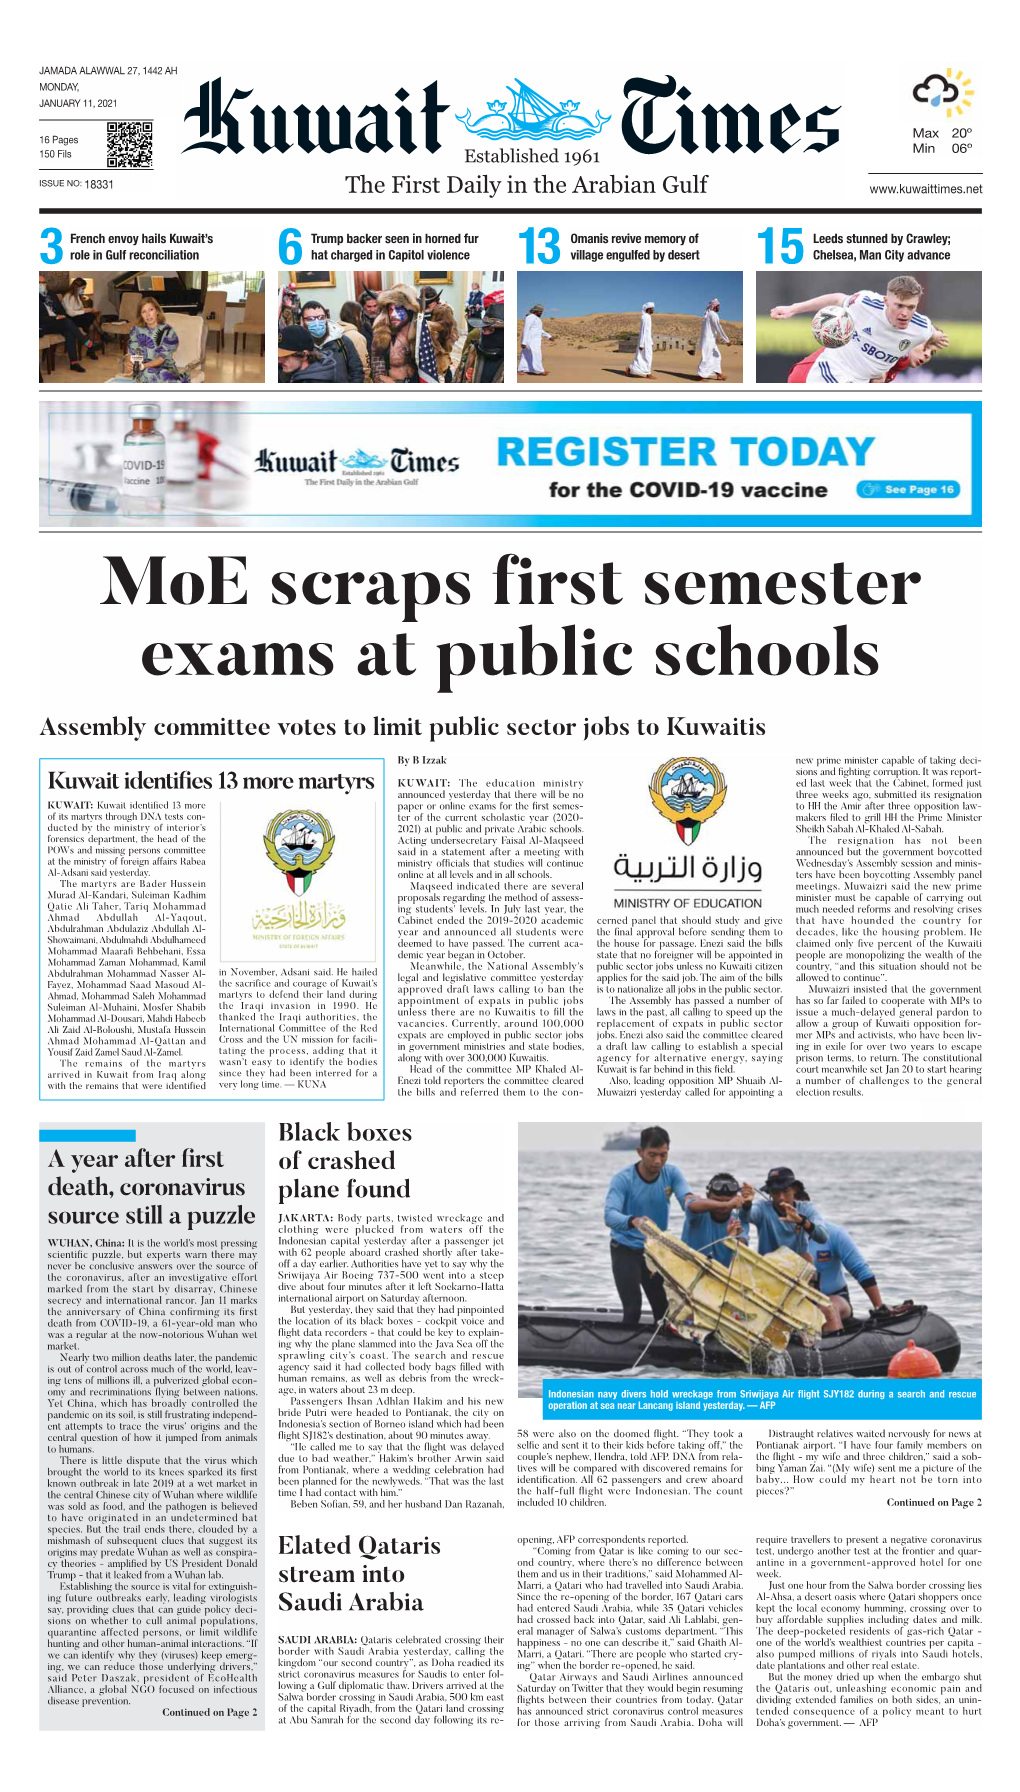 Moe Scraps First Semester Exams at Public Schools